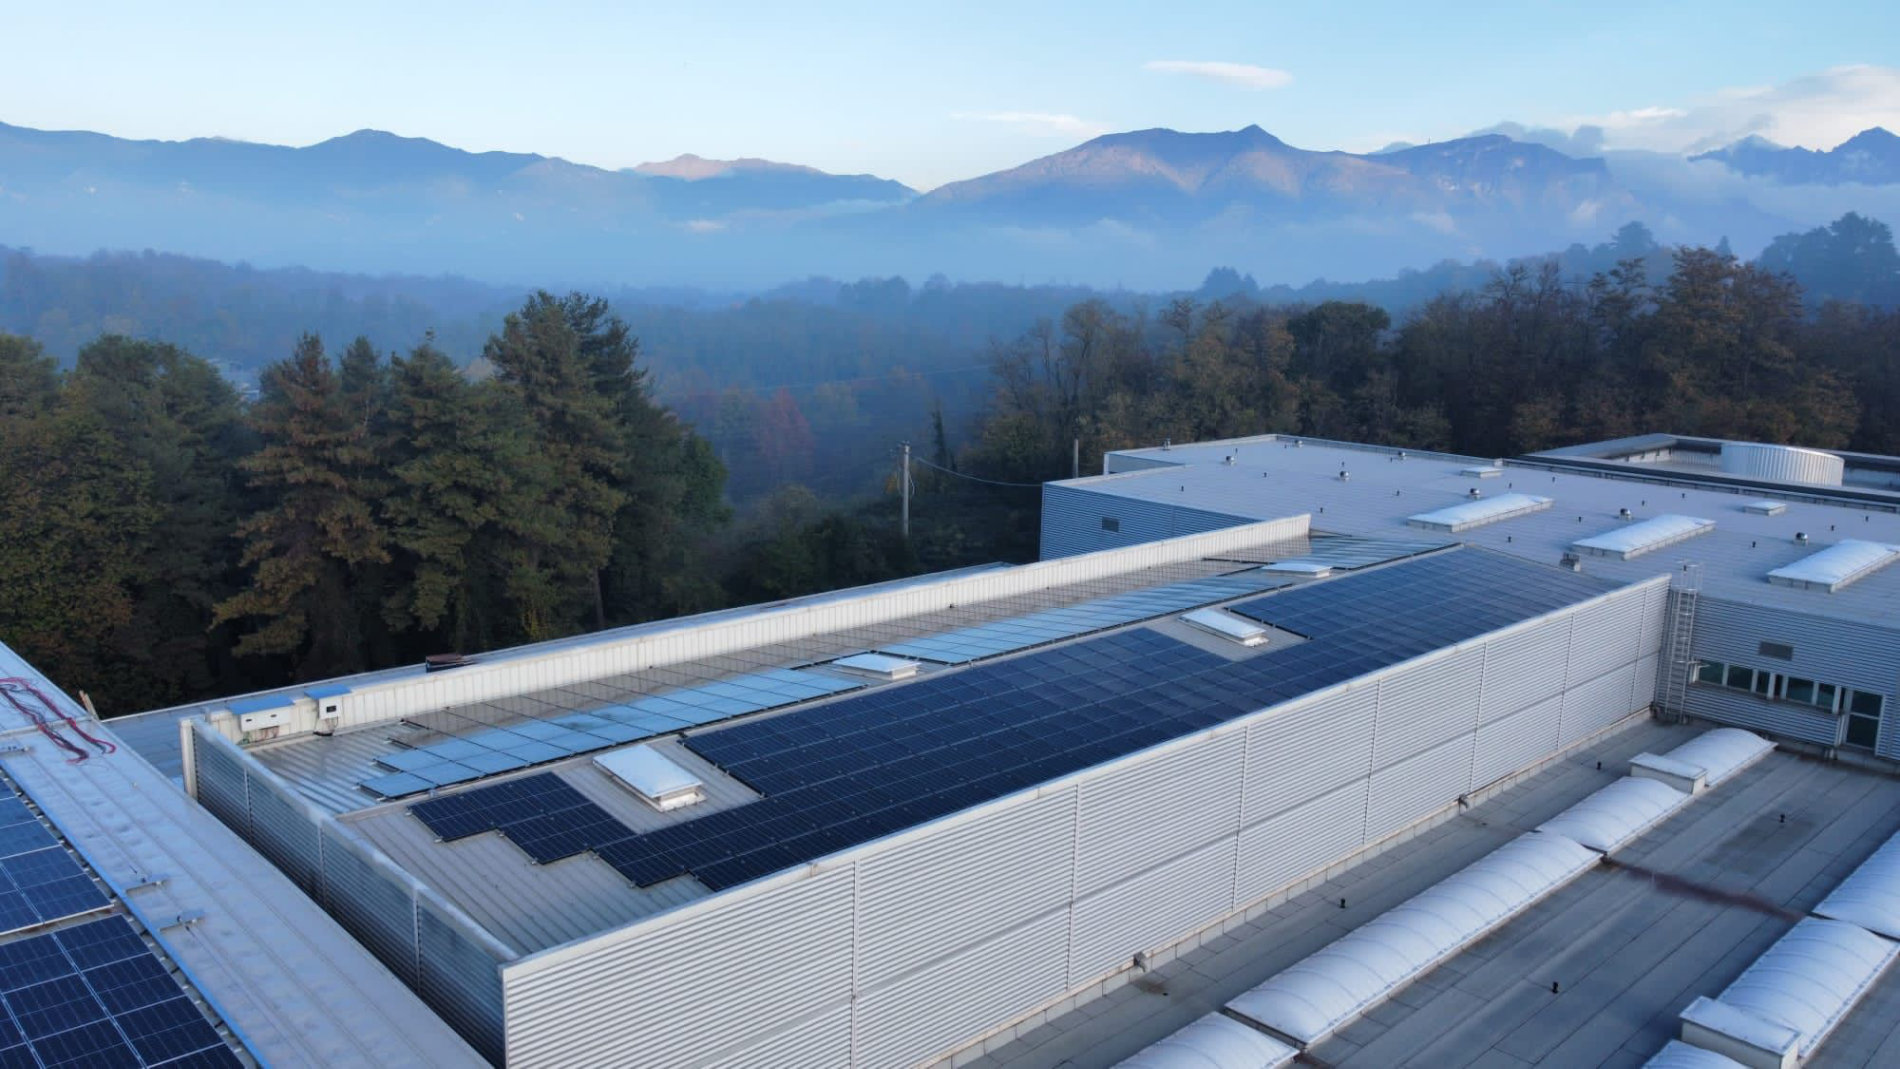 Gute Aussichten fürs Klima: Die Pozzi Arturo Spa. gewinnt bis zu 60 Prozent der benötigten Energie durch die eigene Photovoltaik-Anlage. (Foto: Pozzi Arturo Spa.)